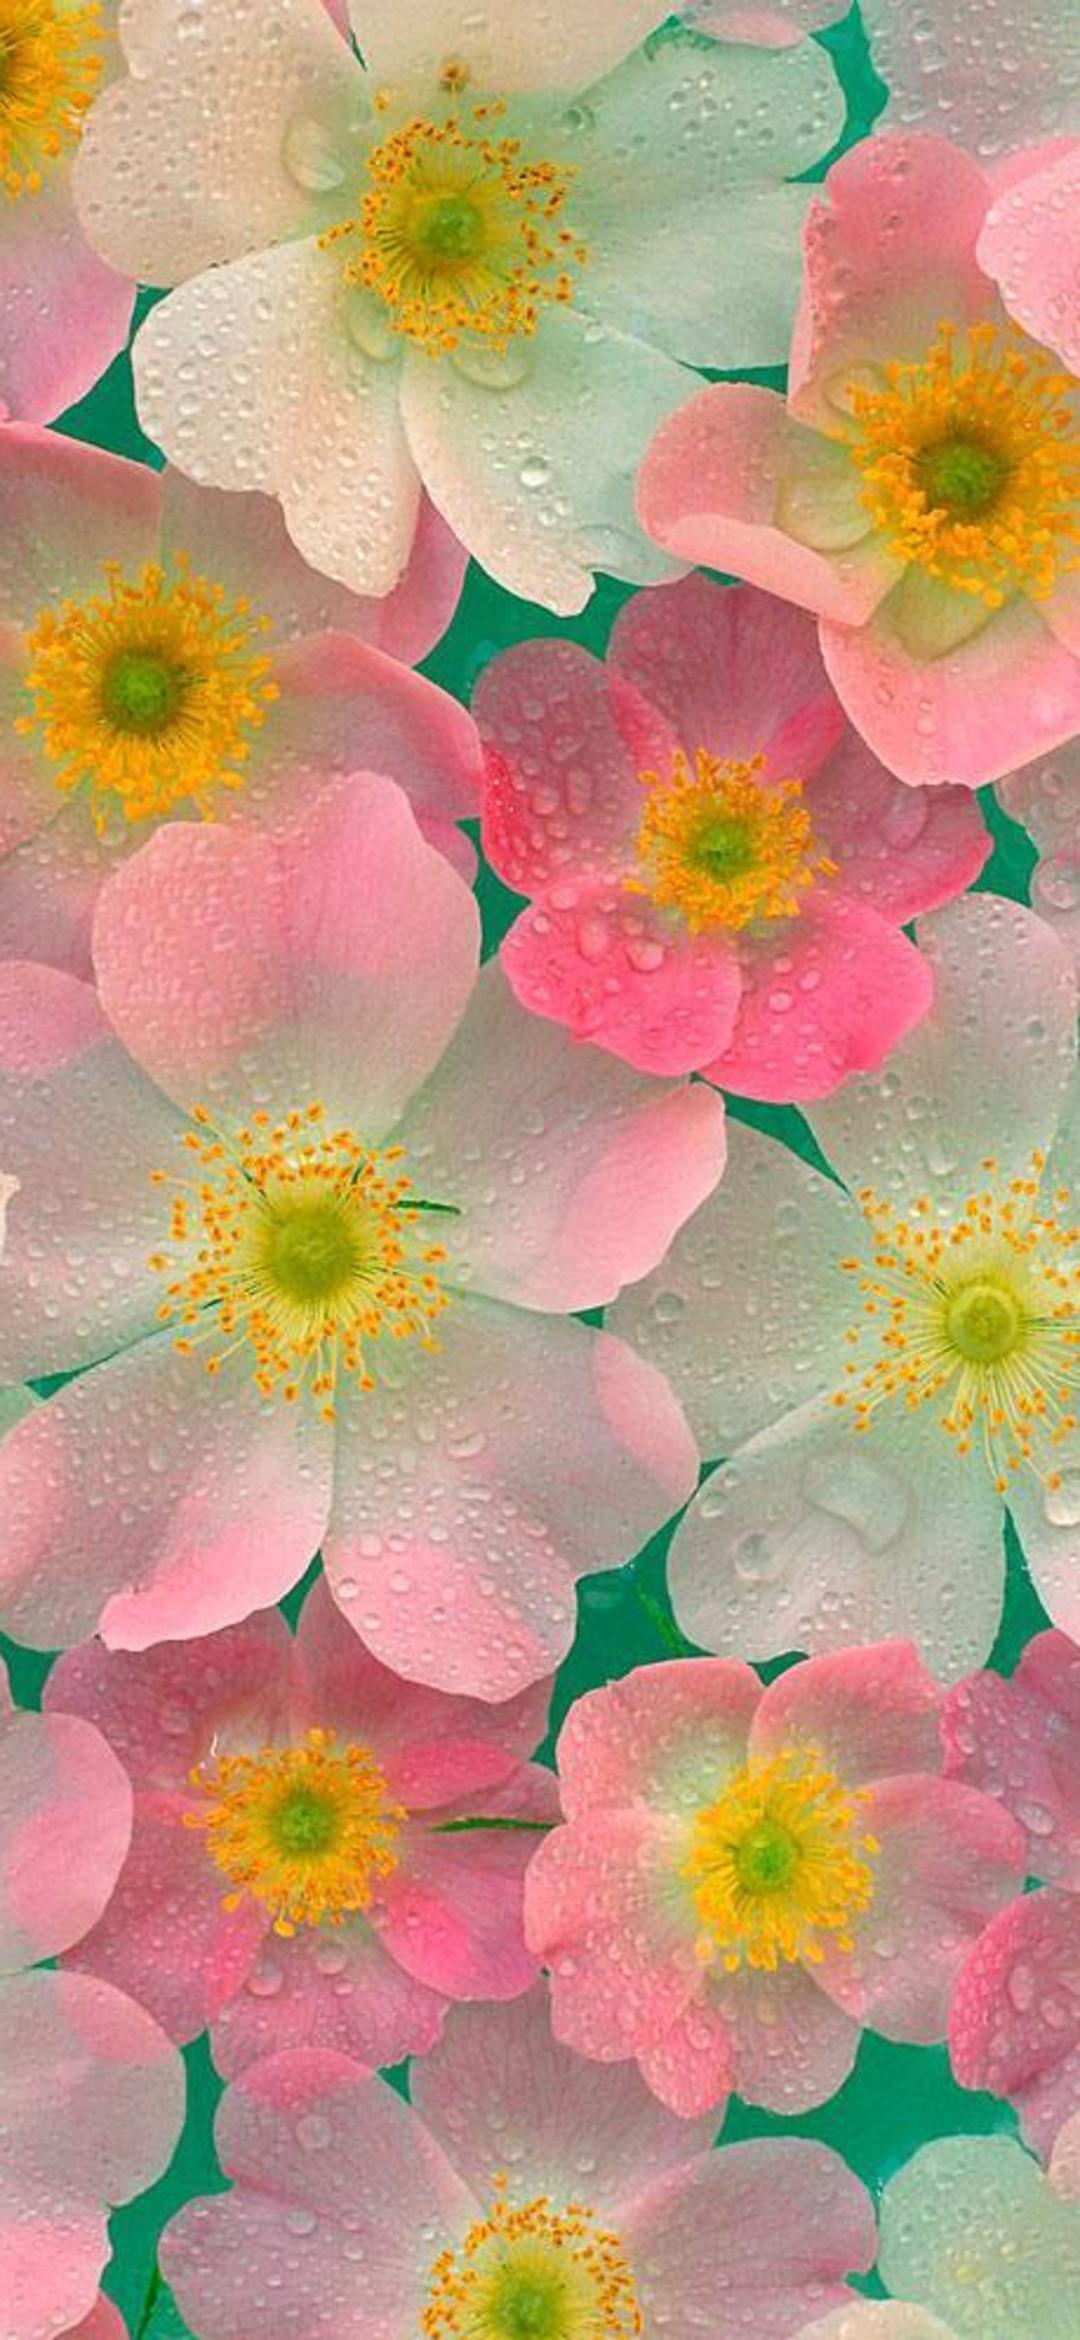 3d Flower Desktop Wallpaper Background, Pictures For Iphone Wallpaper  Background Image And Wallpaper for Free Download